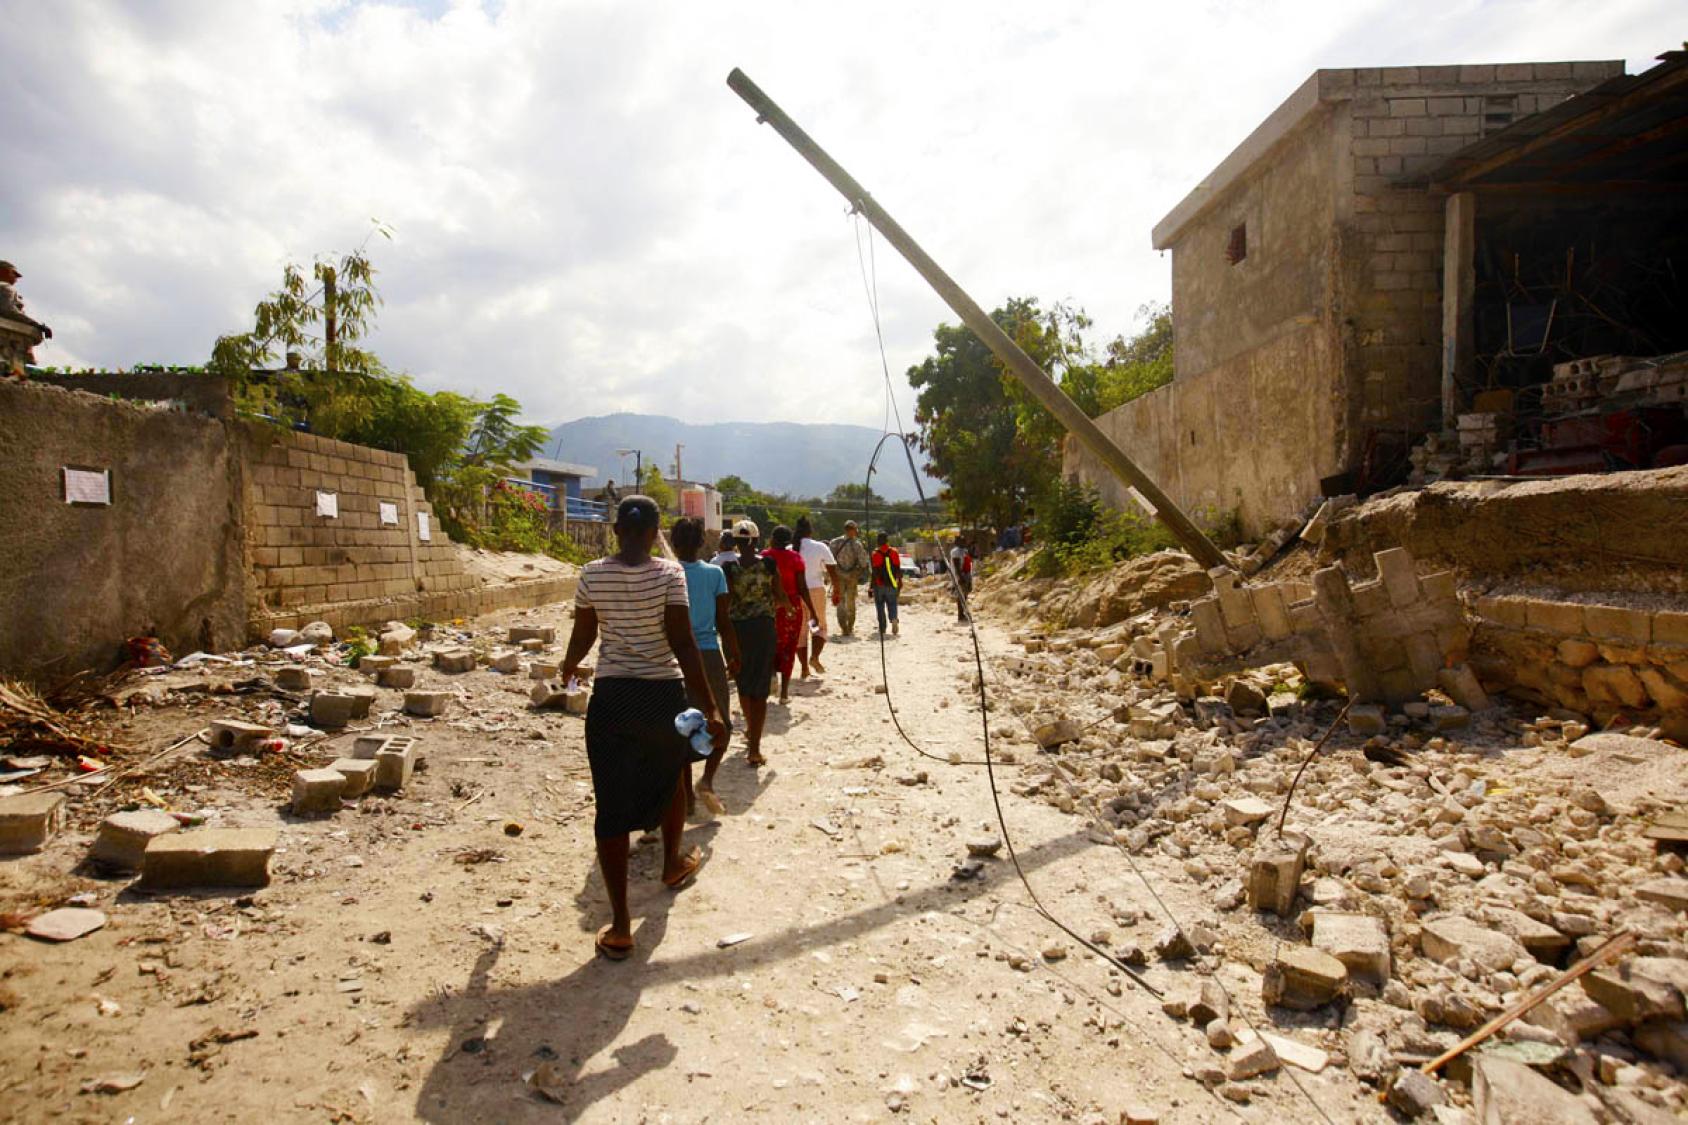 La gente camina en fila por una calle con escombros a ambos lados.